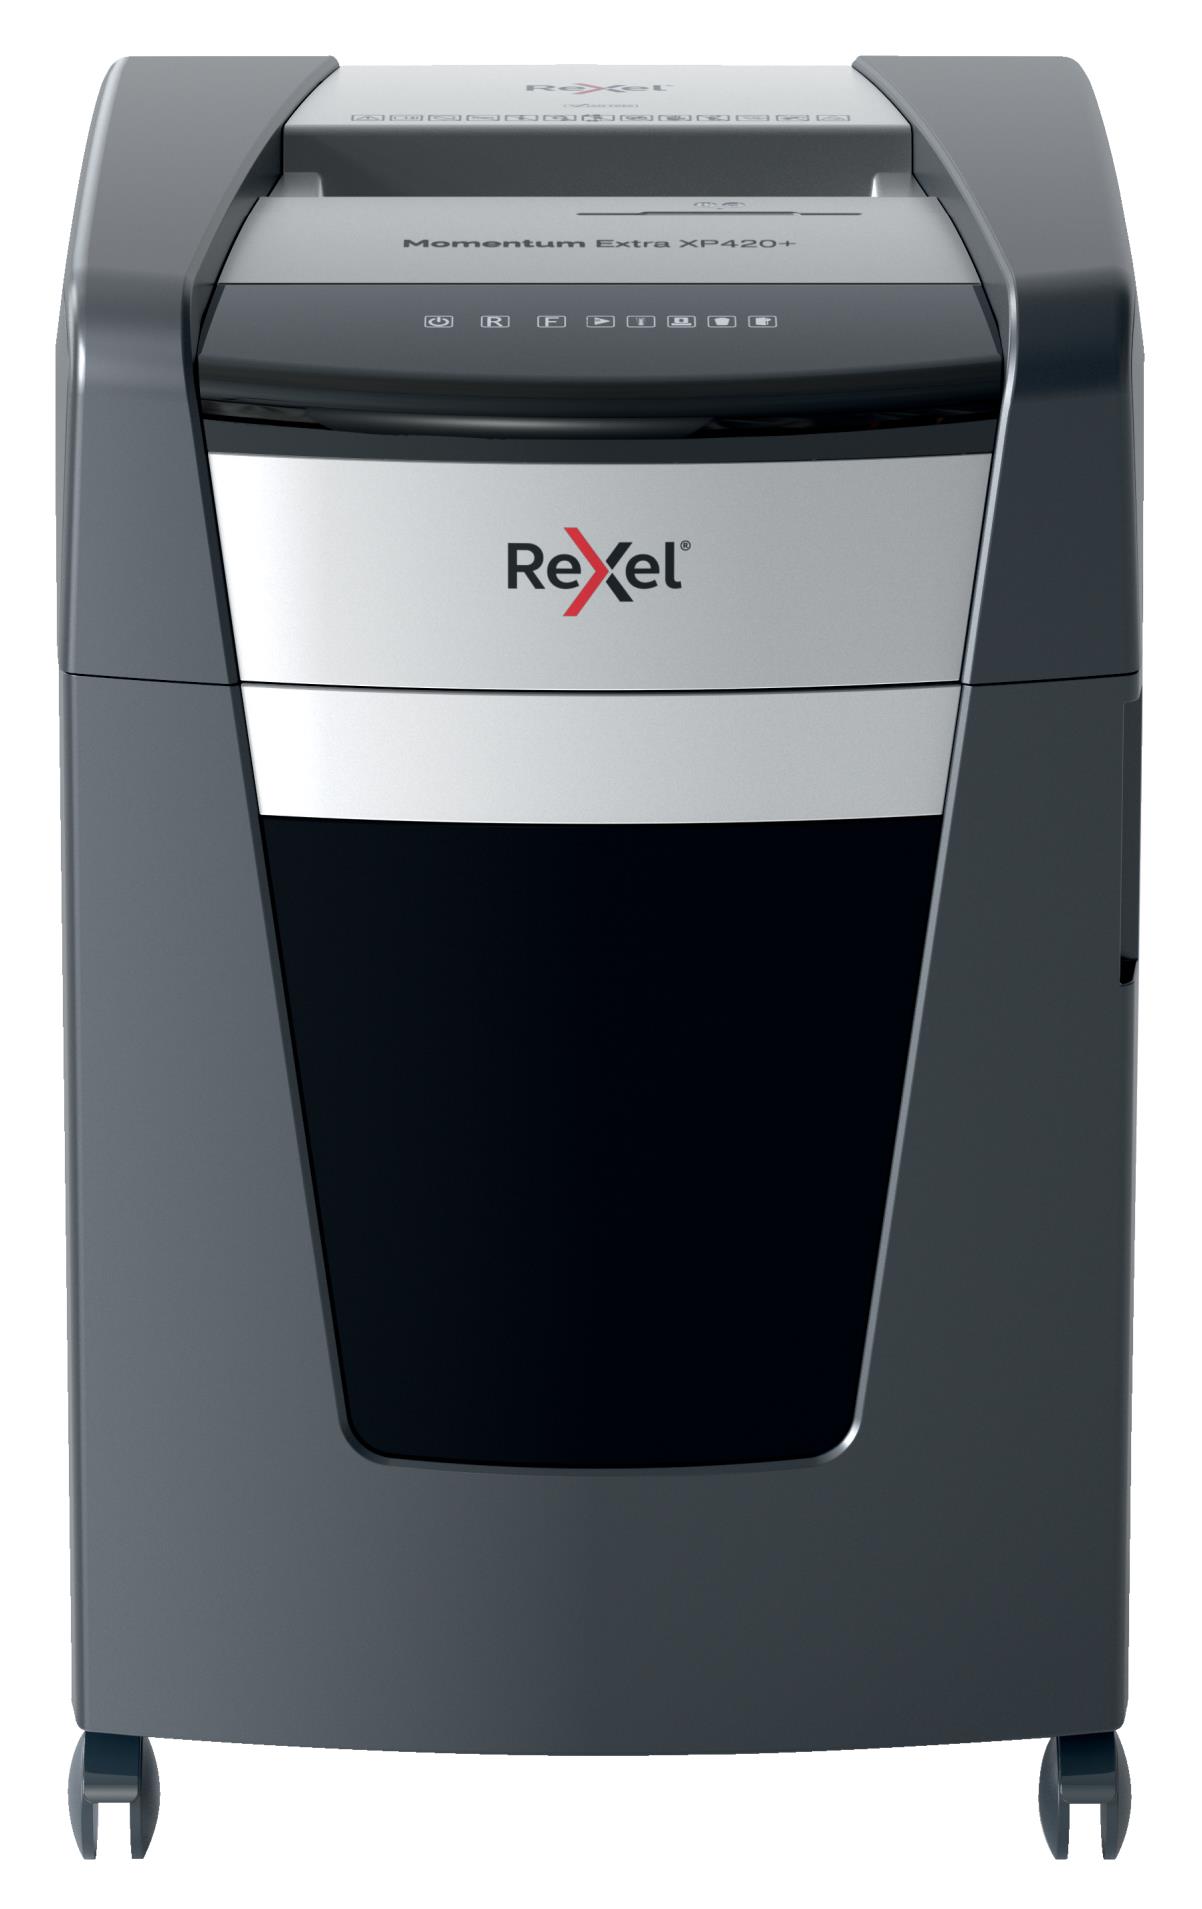 Skartovačka Rexel Momentum Extra XP420+ - P4, řez na částice 4 x 35 mm